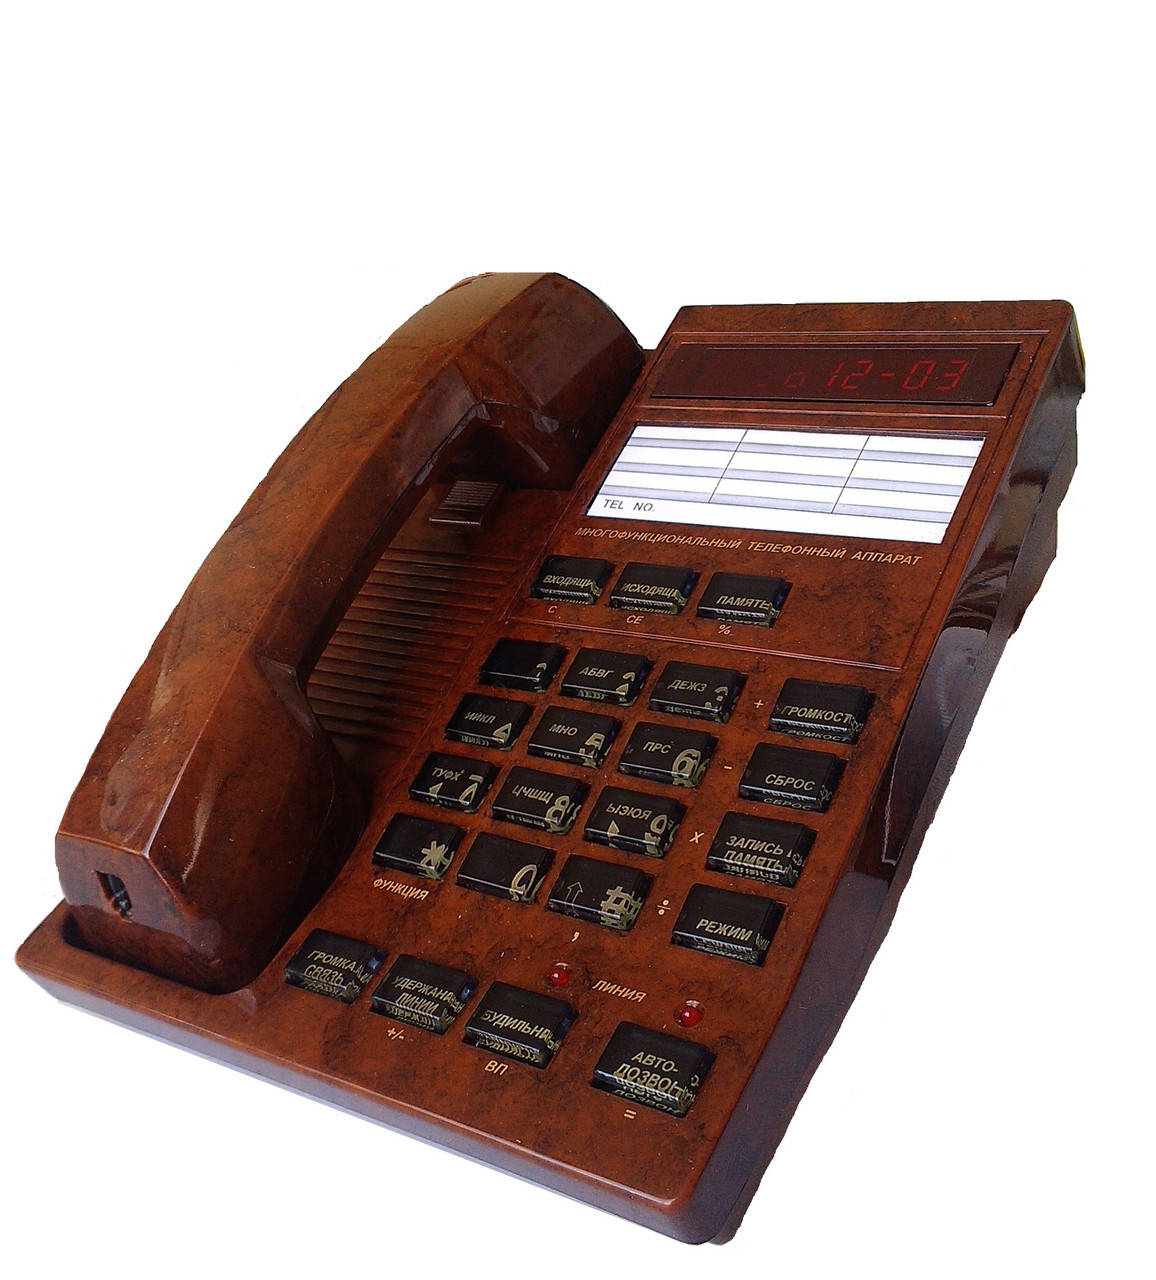 

Многофункциональный телефон с АОН МЭЛТ-3030+автоответчик на 20 мин.